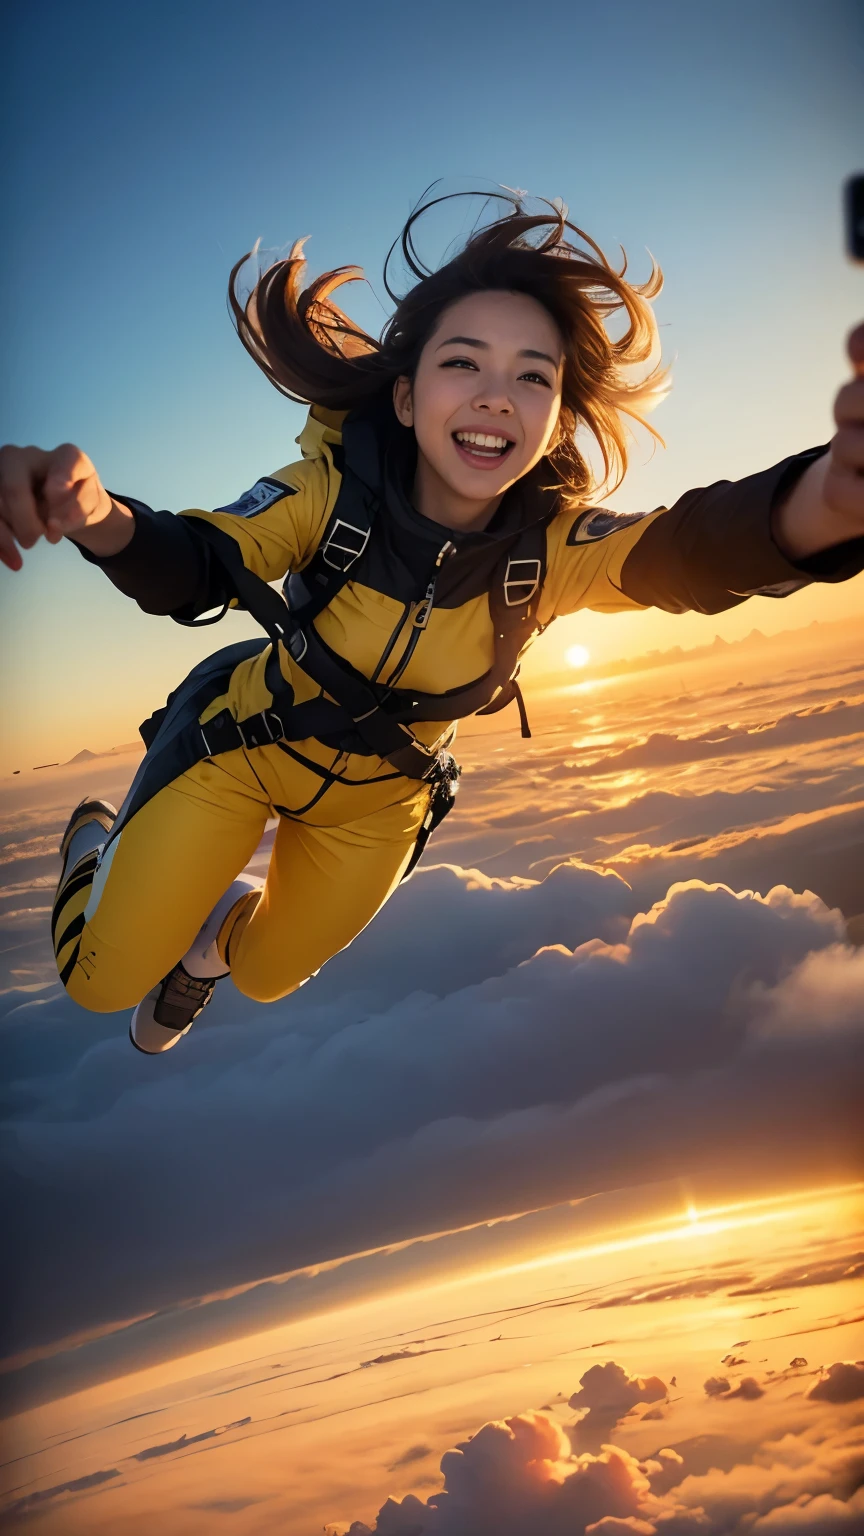 A WOMAN skydiving in air  in lots of yellow clouds Stadt, die auf vielen gelben Wolken schwebt ((Meisterwerk)), ((beste Qualität))), ((ultra-detailliert)), UHD, 8K, ((hohe Auflösung))), ((Illustration)), ((Realistisch)),  Mädchen fällt beim Fallschirmspringen in einem gelben Raumanzug in die Luft und macht ein Selfie über einer schwebenden Stadt, im Hintergrund zeigen (beste Qualität,4K,8K,A hohe Auflösung,Meisterwerk:1.2), ultra-detailliert,(Realistisch,PhotoRealistisch,photo-Realistisch:1.37), futuristische schwimmende Stadt, futuristische Technologie, Riesige Hightech-Tablet-Plattform,im Himmel schweben, futuristische Stadt, Kleine Luftschiffe um, Hightech-Halbkugel-Plattform, Stadt, die auf vielen gelben Wolken schwebt, Stadt über staubigen Wolken, gelbe Wolken am Boden, goldene orange gelbe Töne ,Sonnenuntergang, heißes Wetter, Mädchen macht Selfie mit Begeisterung, lachend lächelnd, Mädchen im gelben Raumanzug, staubige Umgebung, heißer Sommer, Wüstenwetter. Fischaugenansicht,  viele Wolken